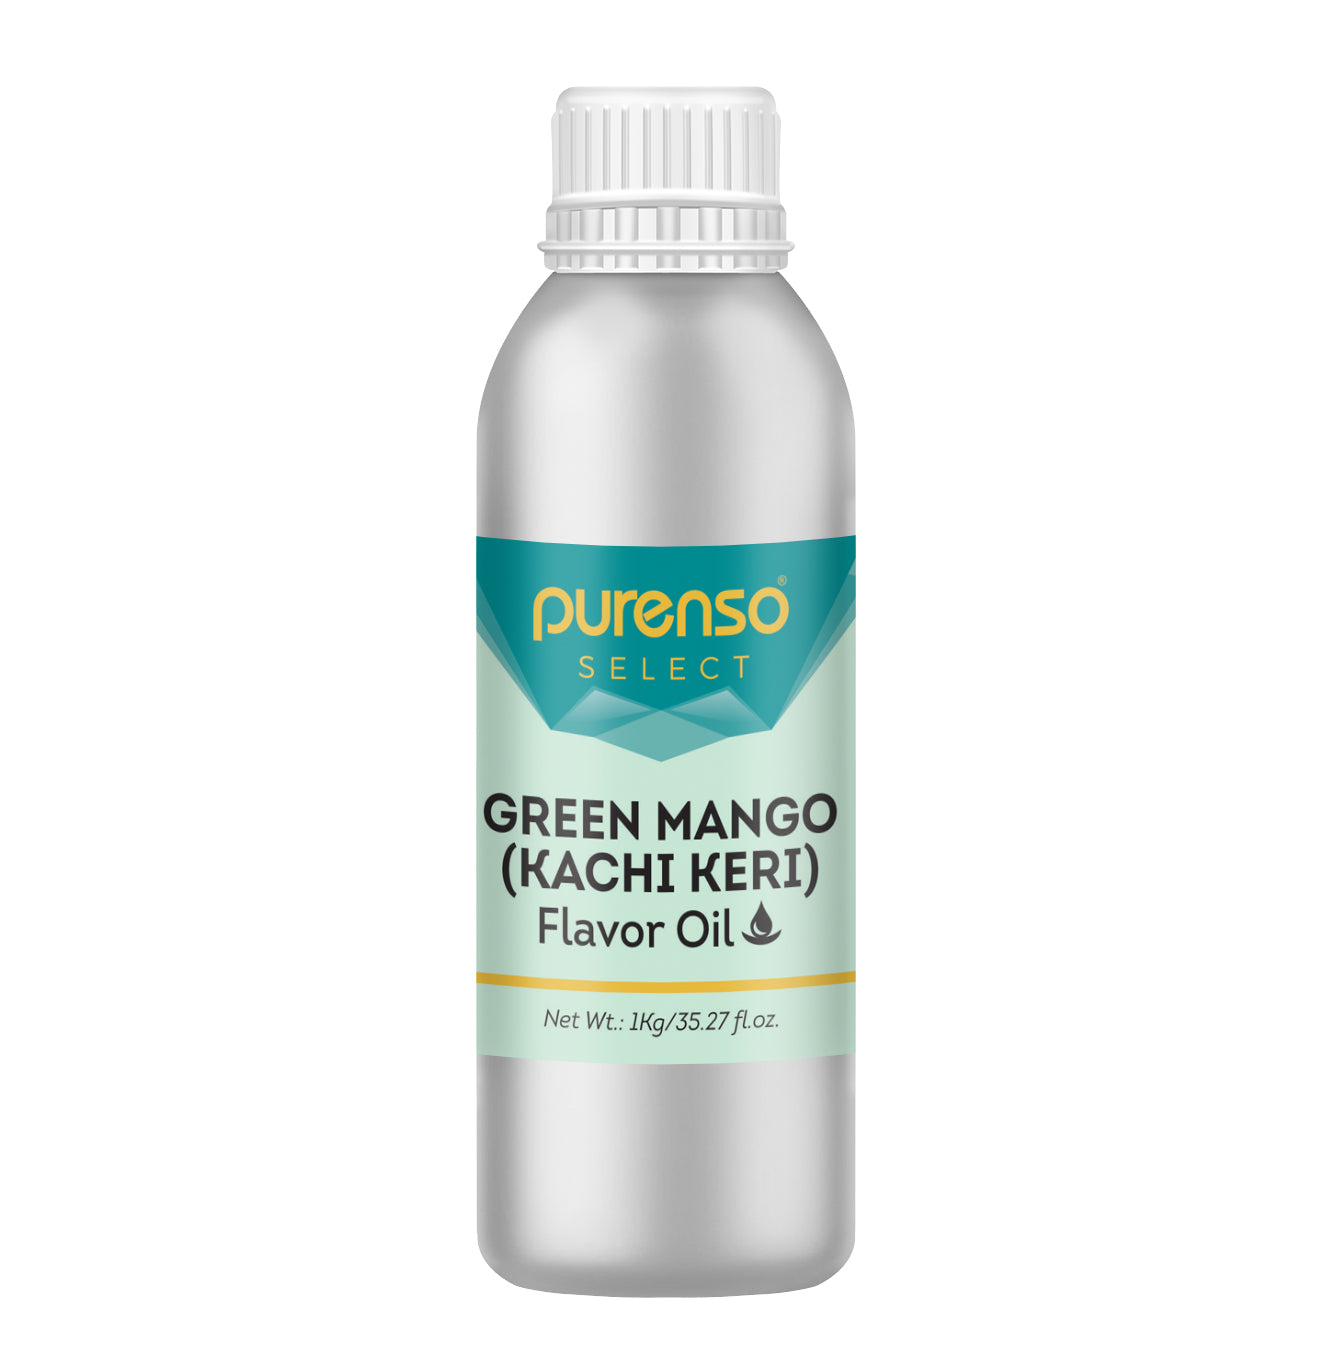 Green Mango (Kachi Keri) Flavor Oil